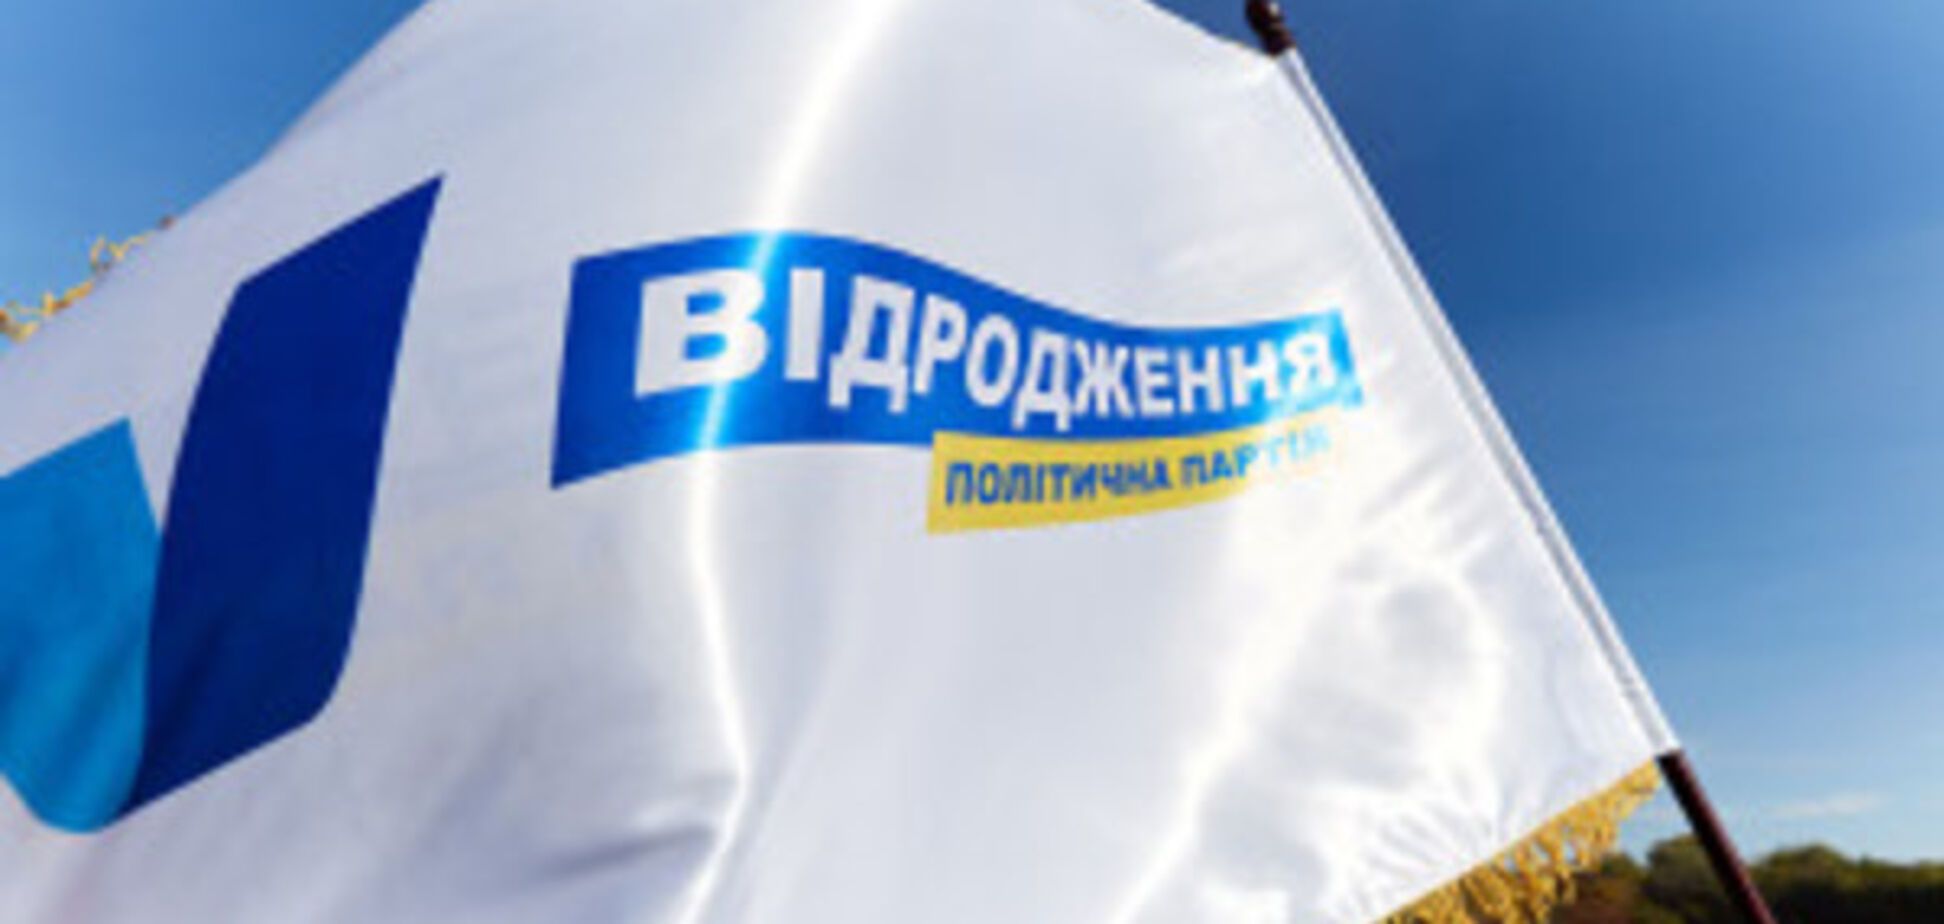 'Відродження' в Харьковской области выделит более 80 млн грн на жилищные кредиты участникам АТО